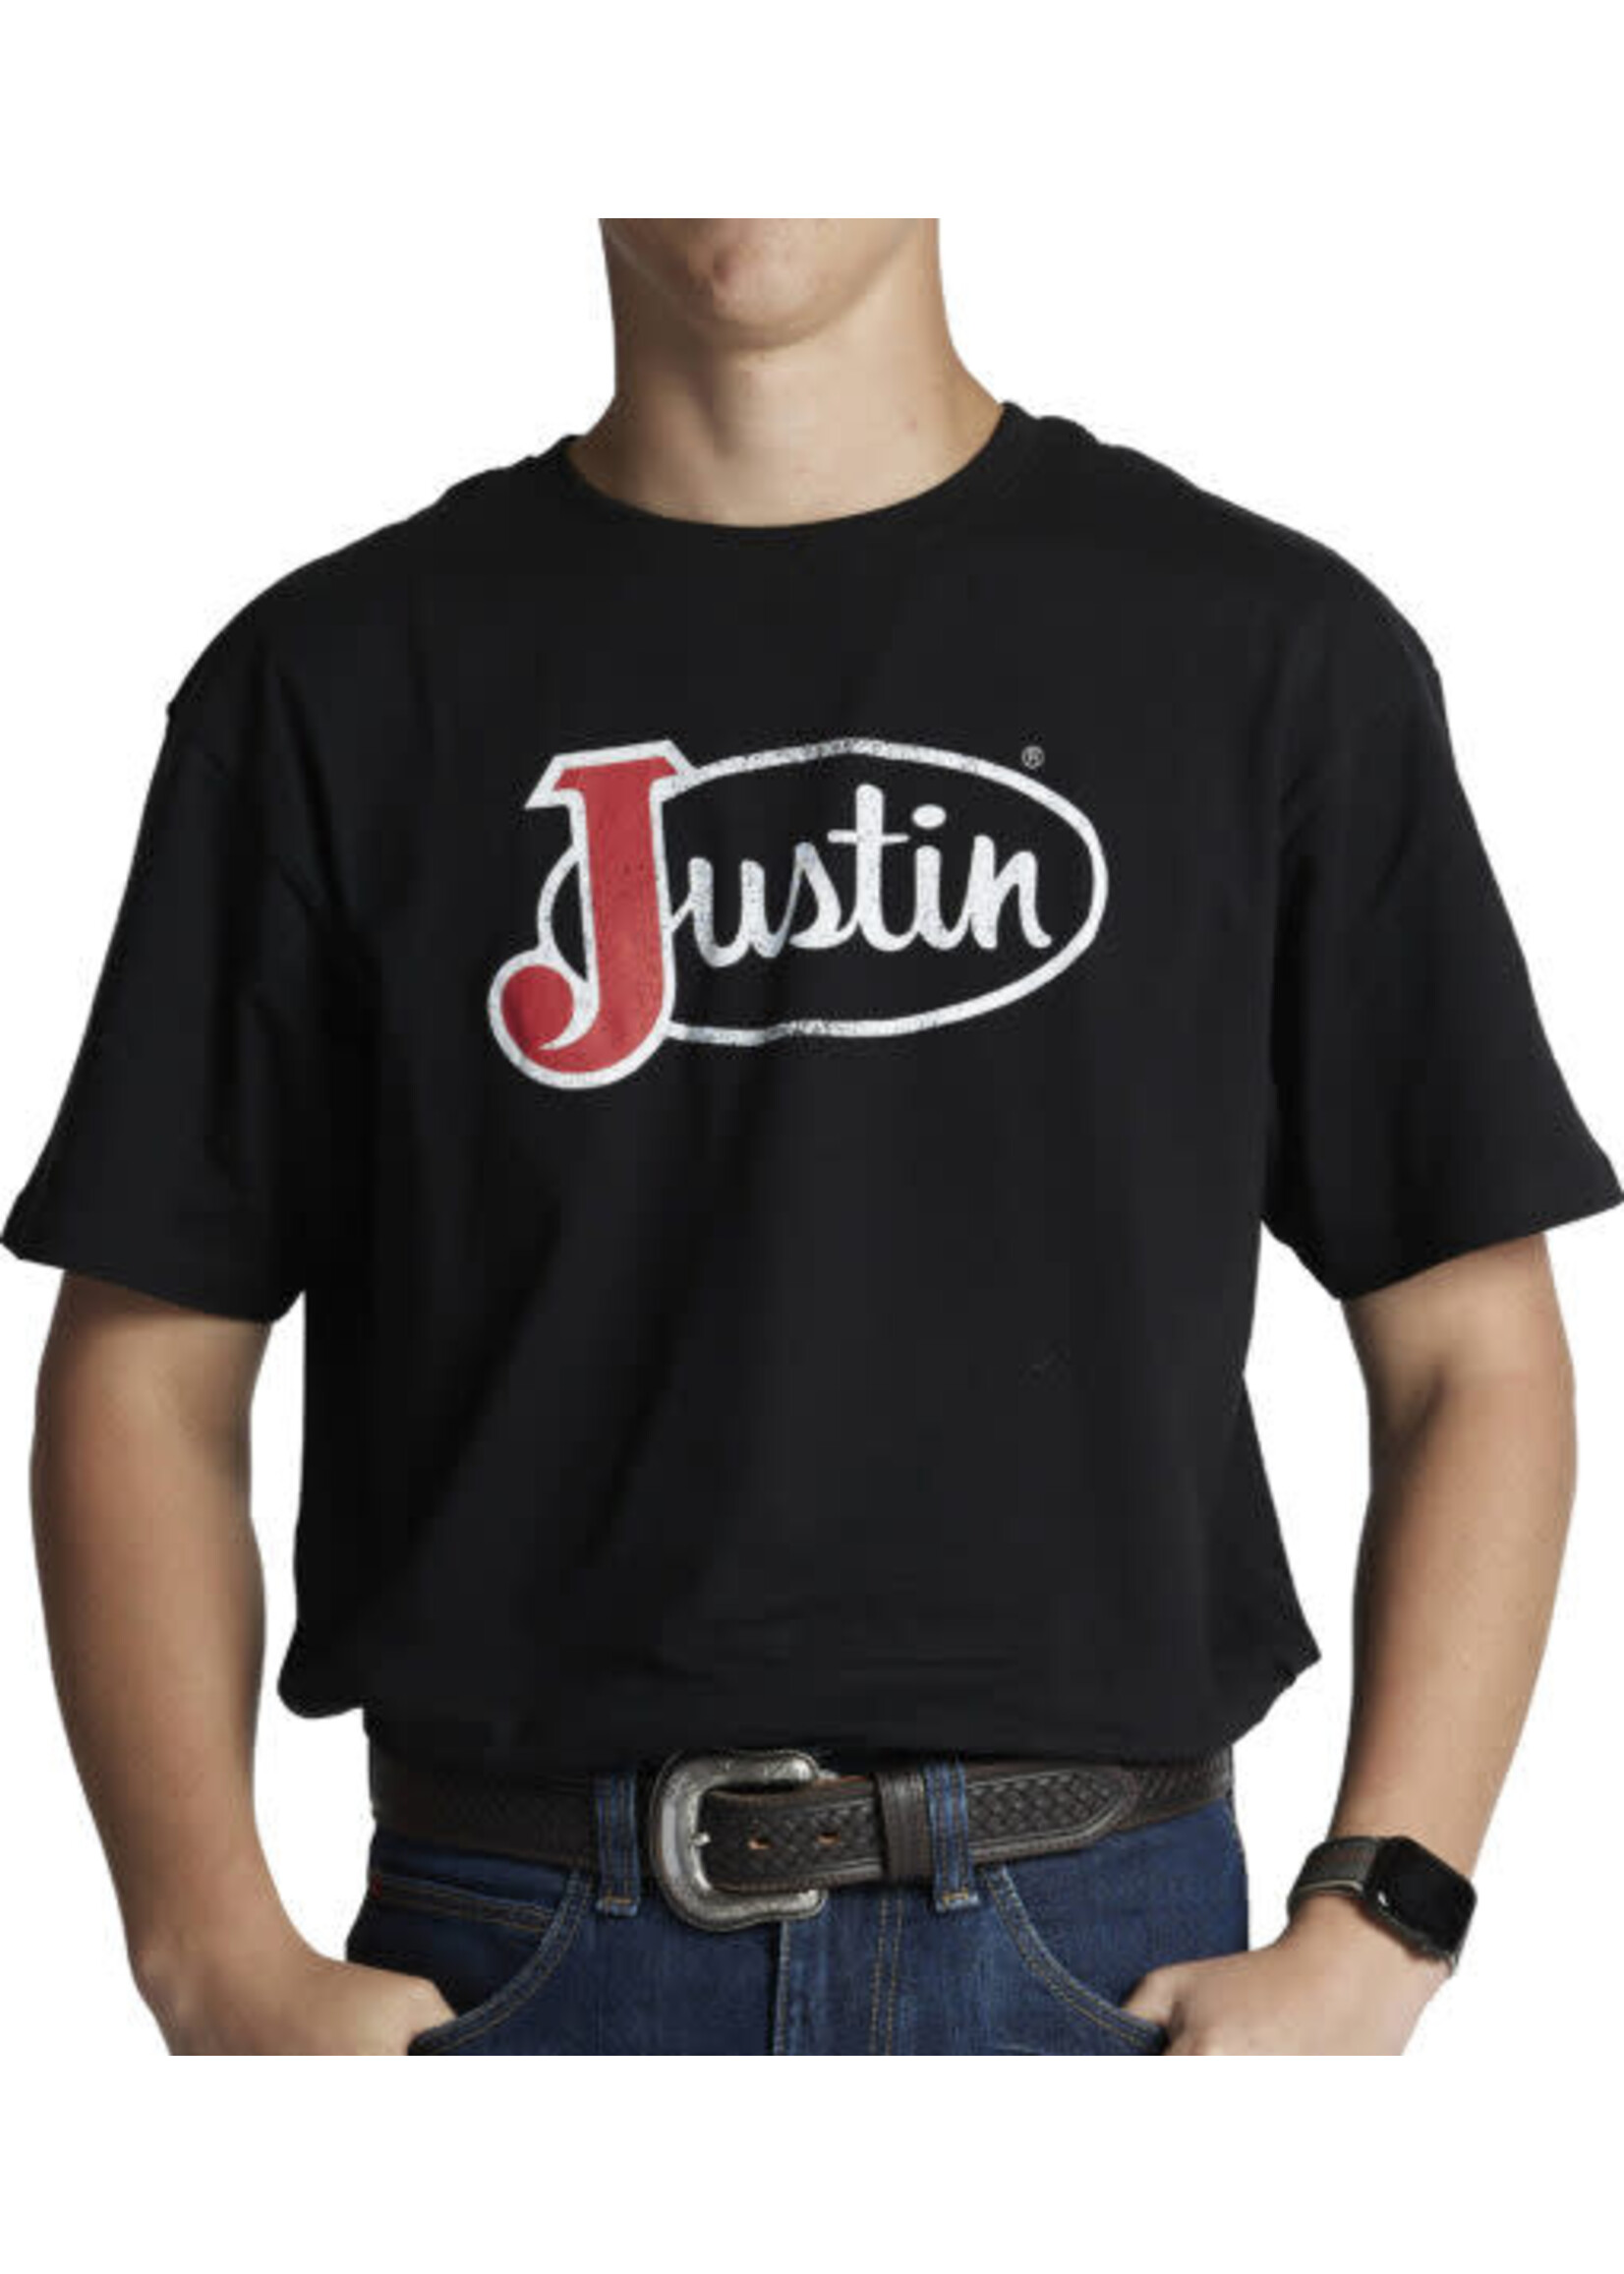 Justin J-G3178  Black Justin Logo Tee